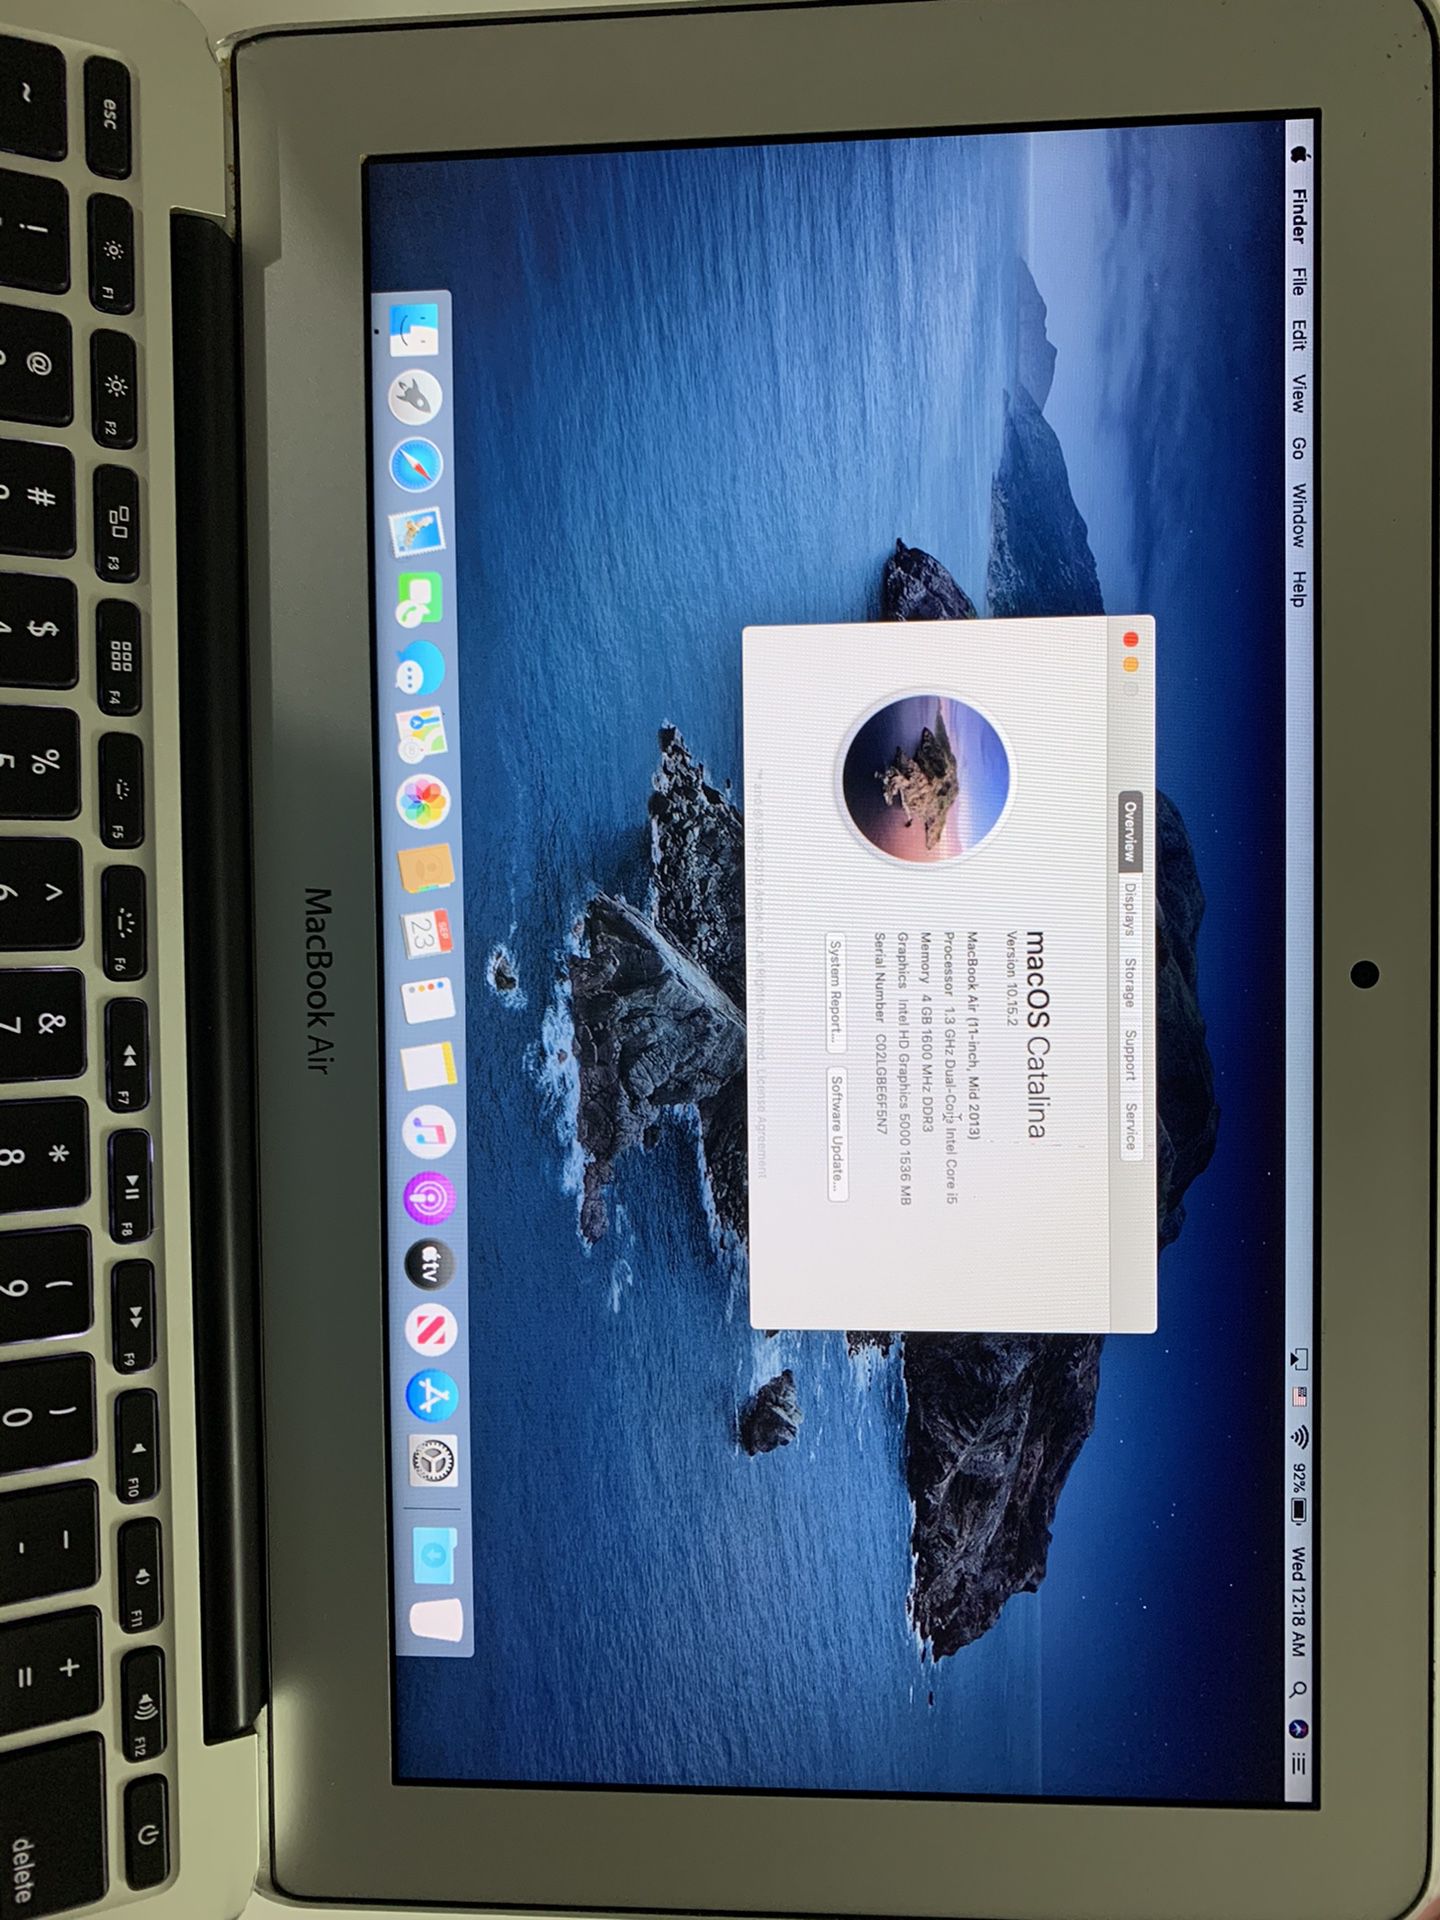 Apple A1465 MacBook Air 11.6”